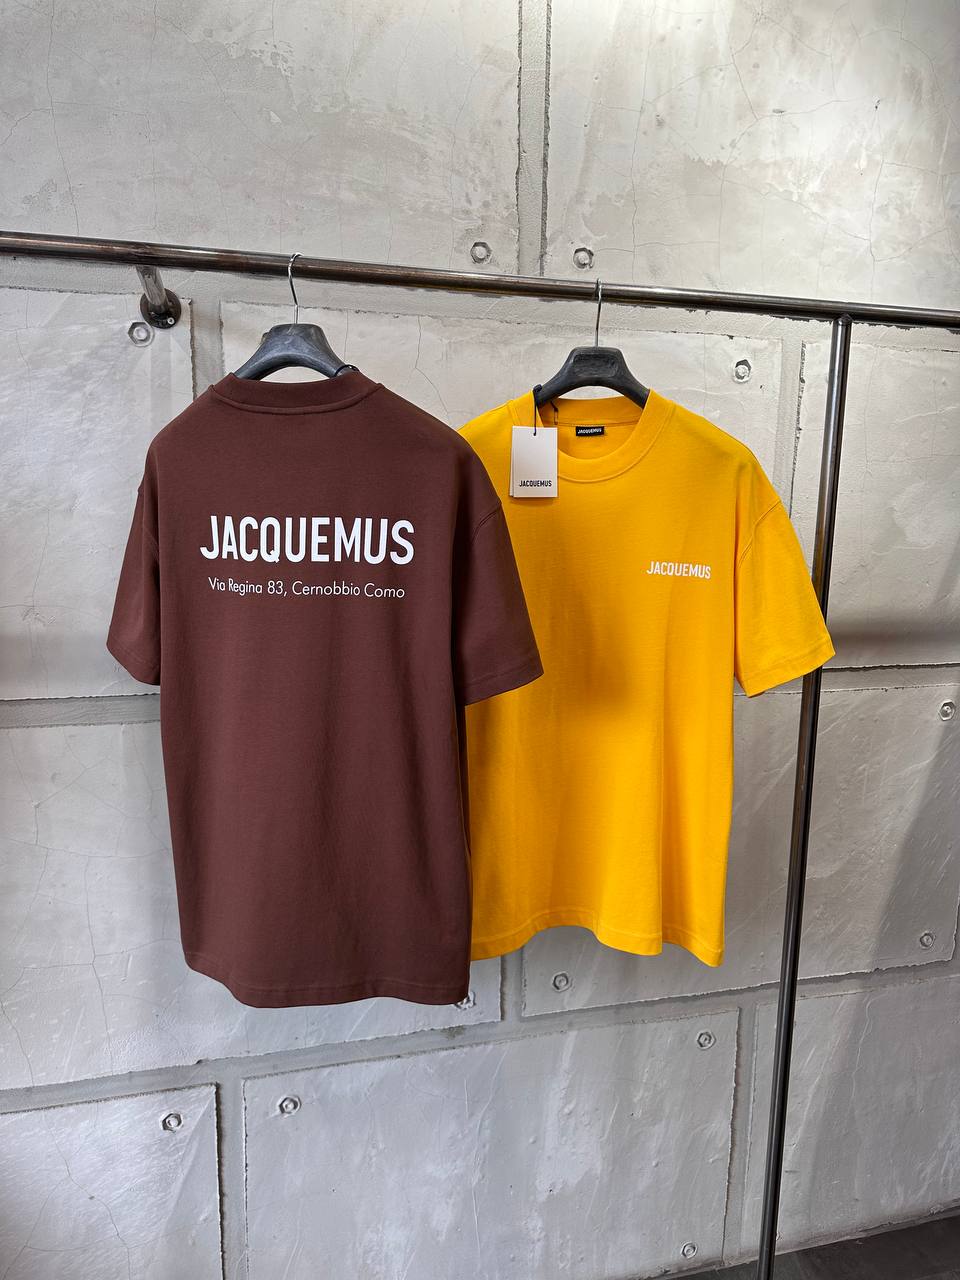 Jacquemus Logo Printed Tshirt For Men